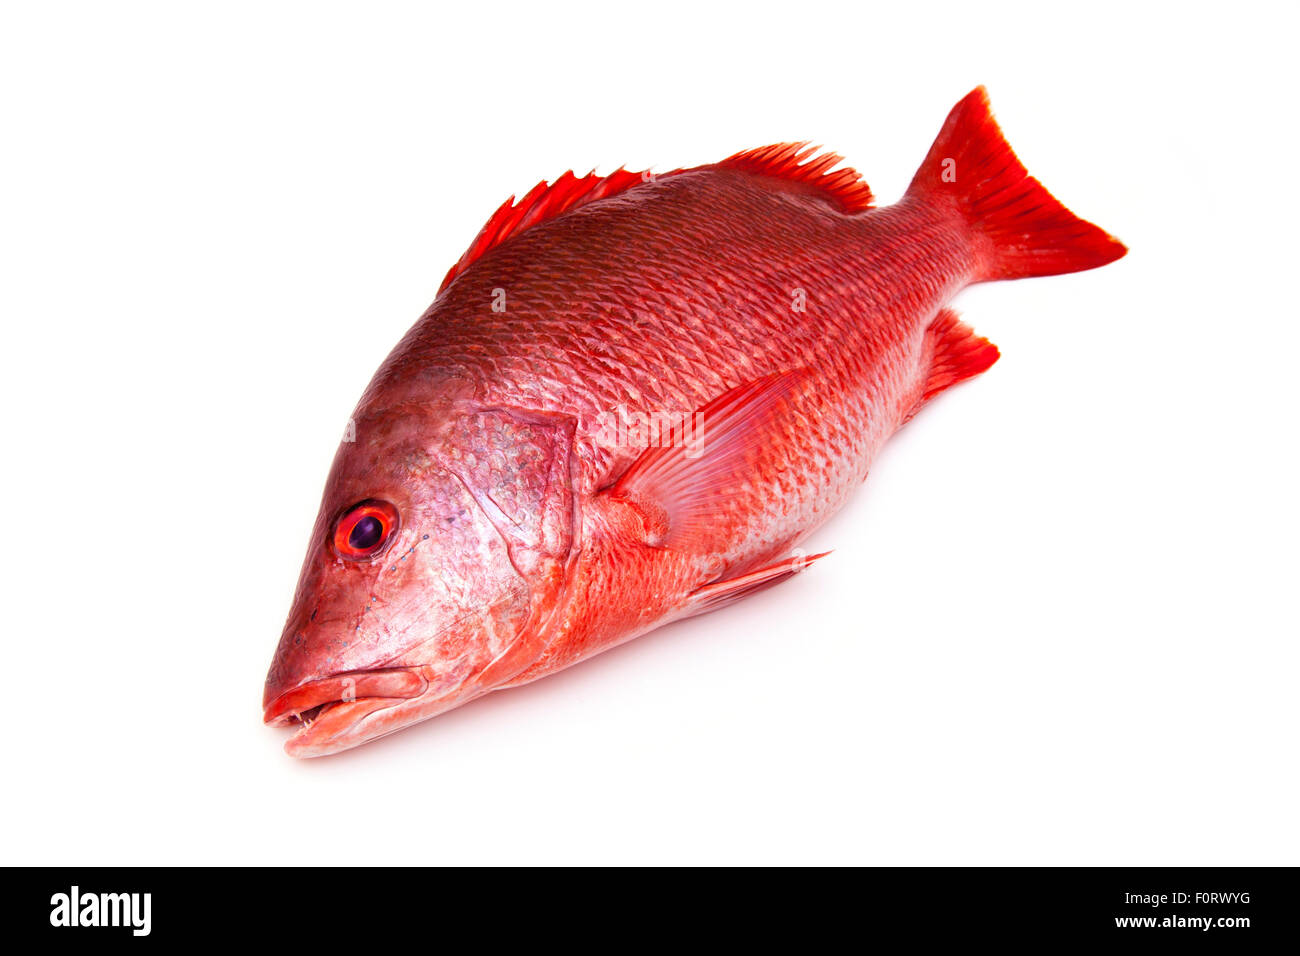 Nördlichen Red Snapper Lutjanus Campechanus Fisch isoliert auf einem weißen Hintergrund. Stockfoto